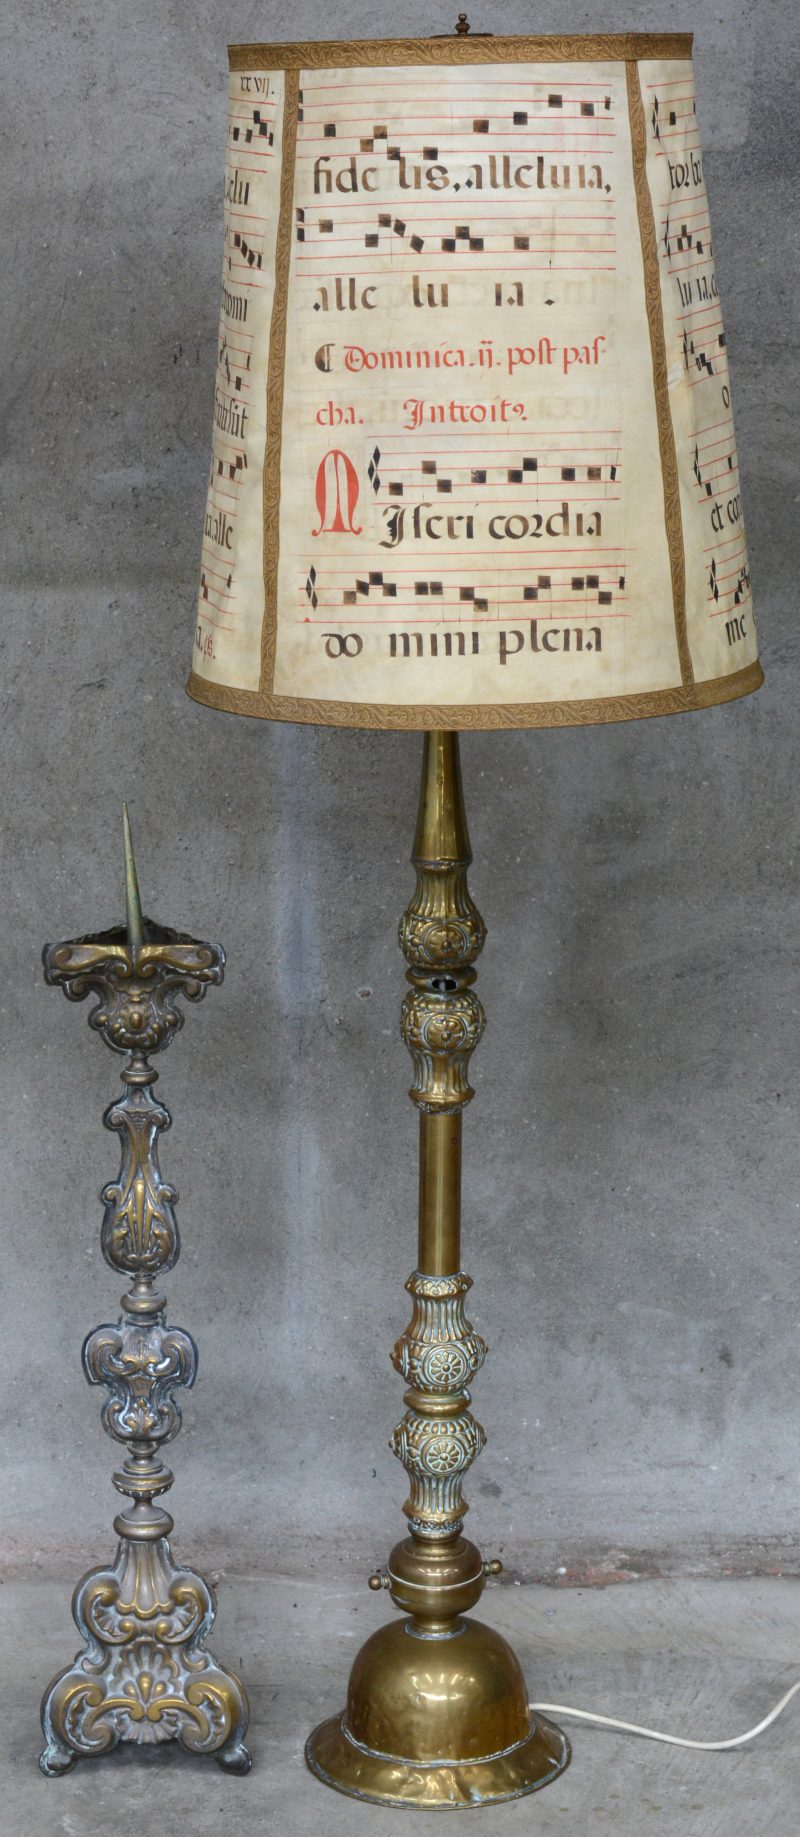 Twee verschillende messingen kandelaars, waarbij één barokke en één gemonteerd als staande lamp.